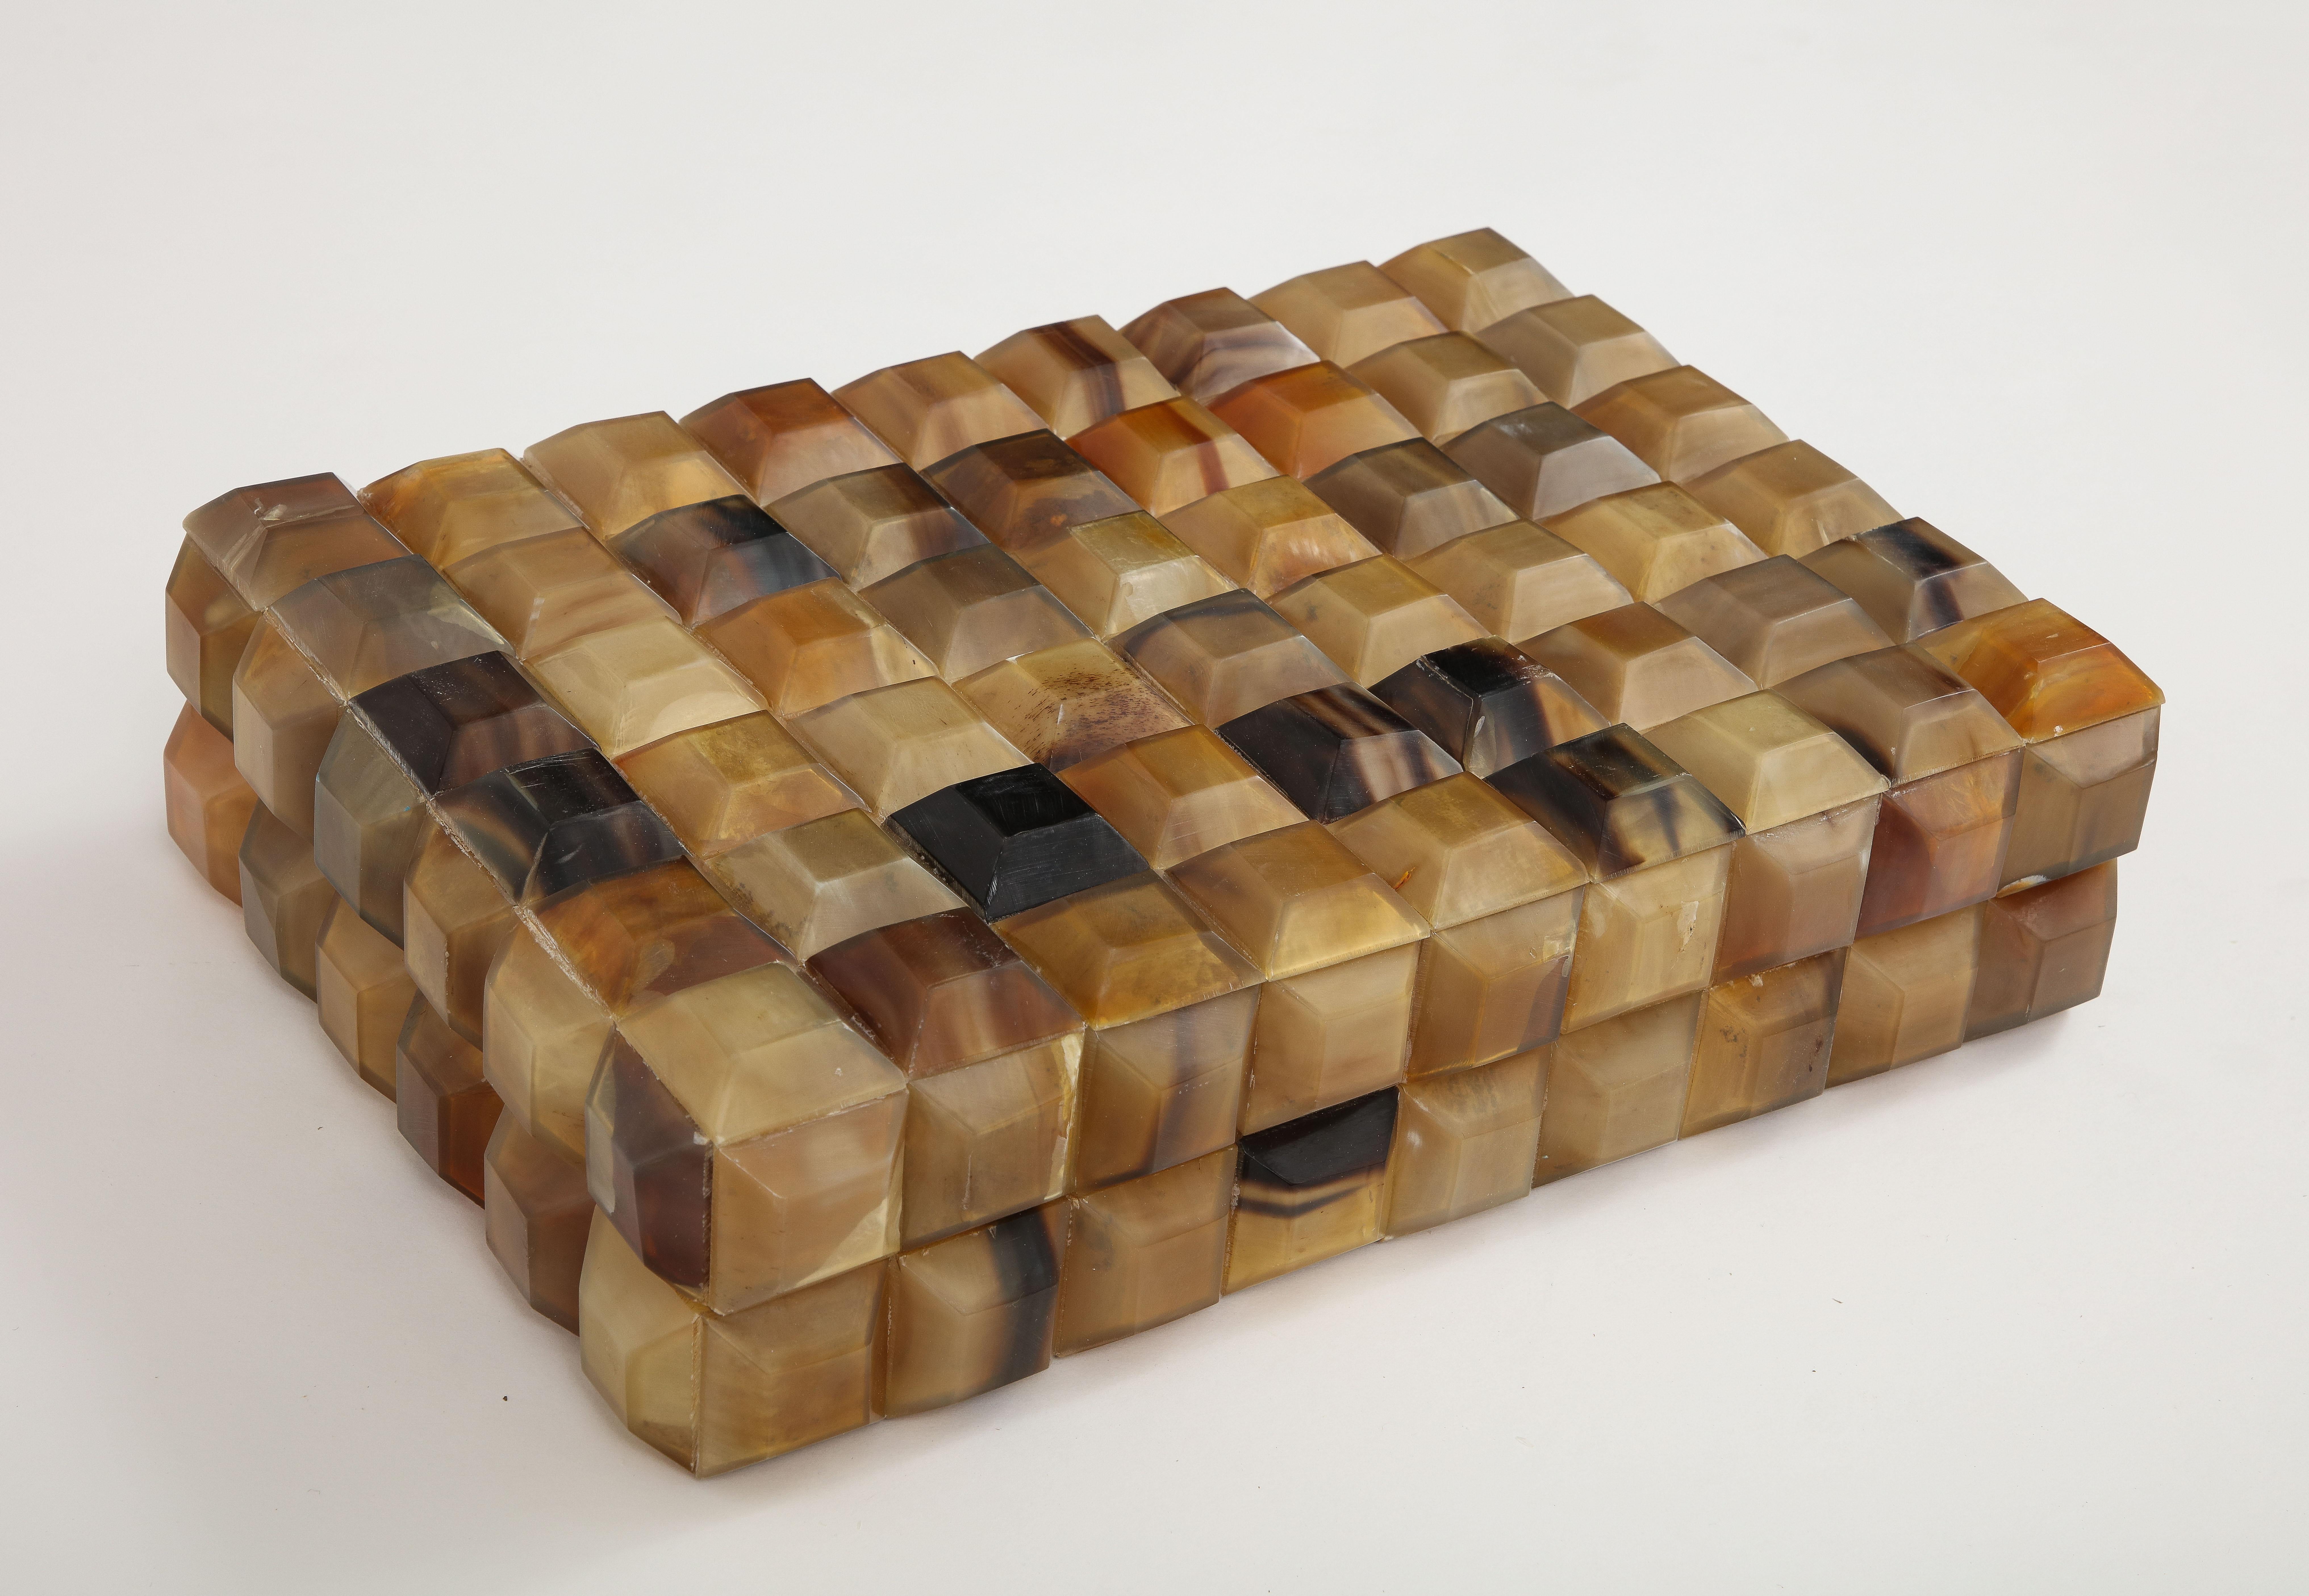 Dekorative Aufbewahrungsbox mit quadratischen, facettierten Horn-Elementen, die mit Holz ausgekleidet ist. Eine tolle Ergänzung für jeden Couchtisch oder Schreibtisch.